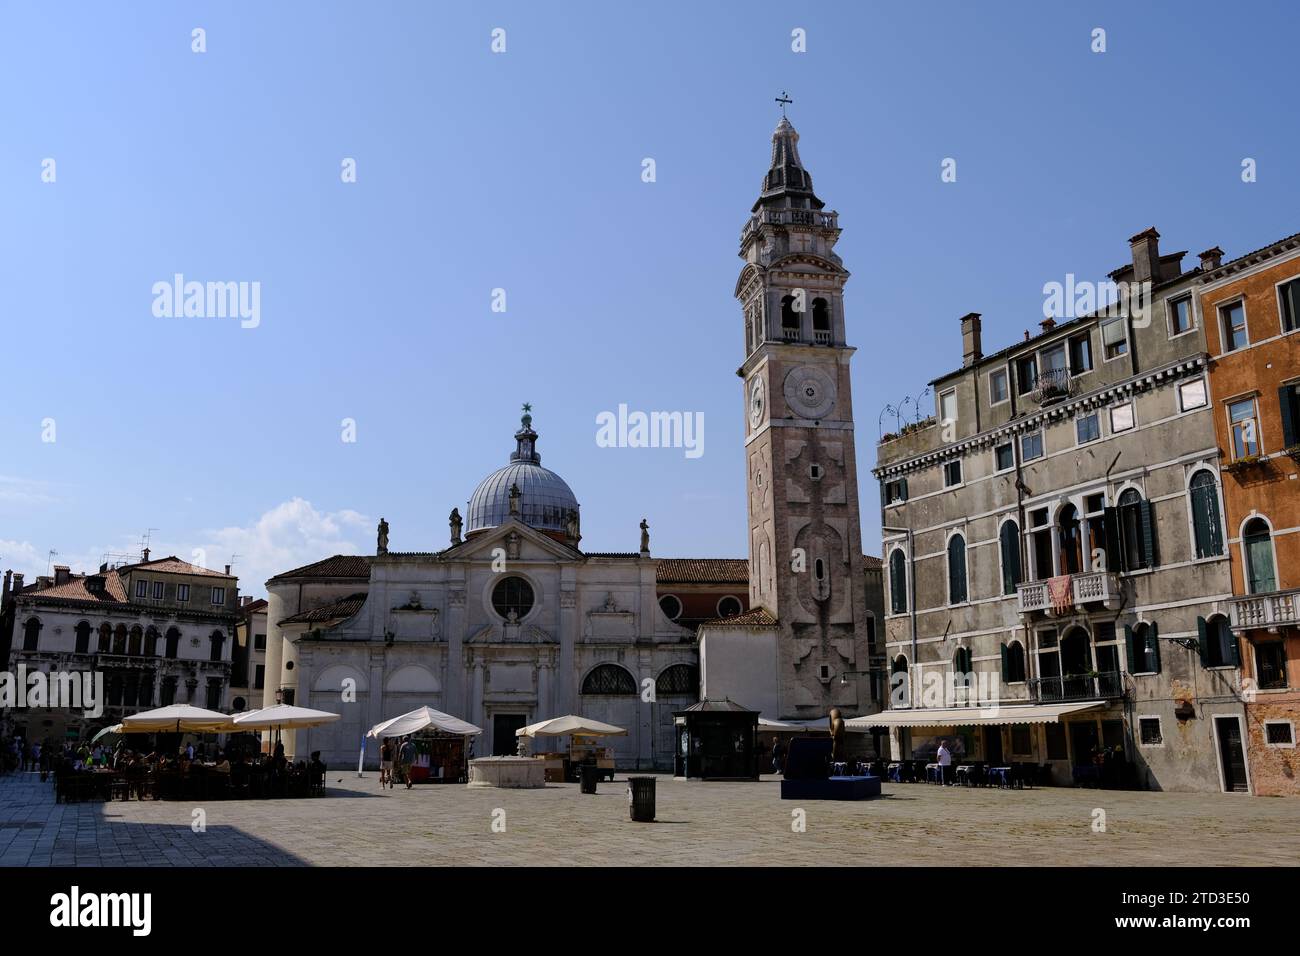 Venice Italy - Santa Maria Formosa church - Campo Santa Maria Formosa Stock Photo